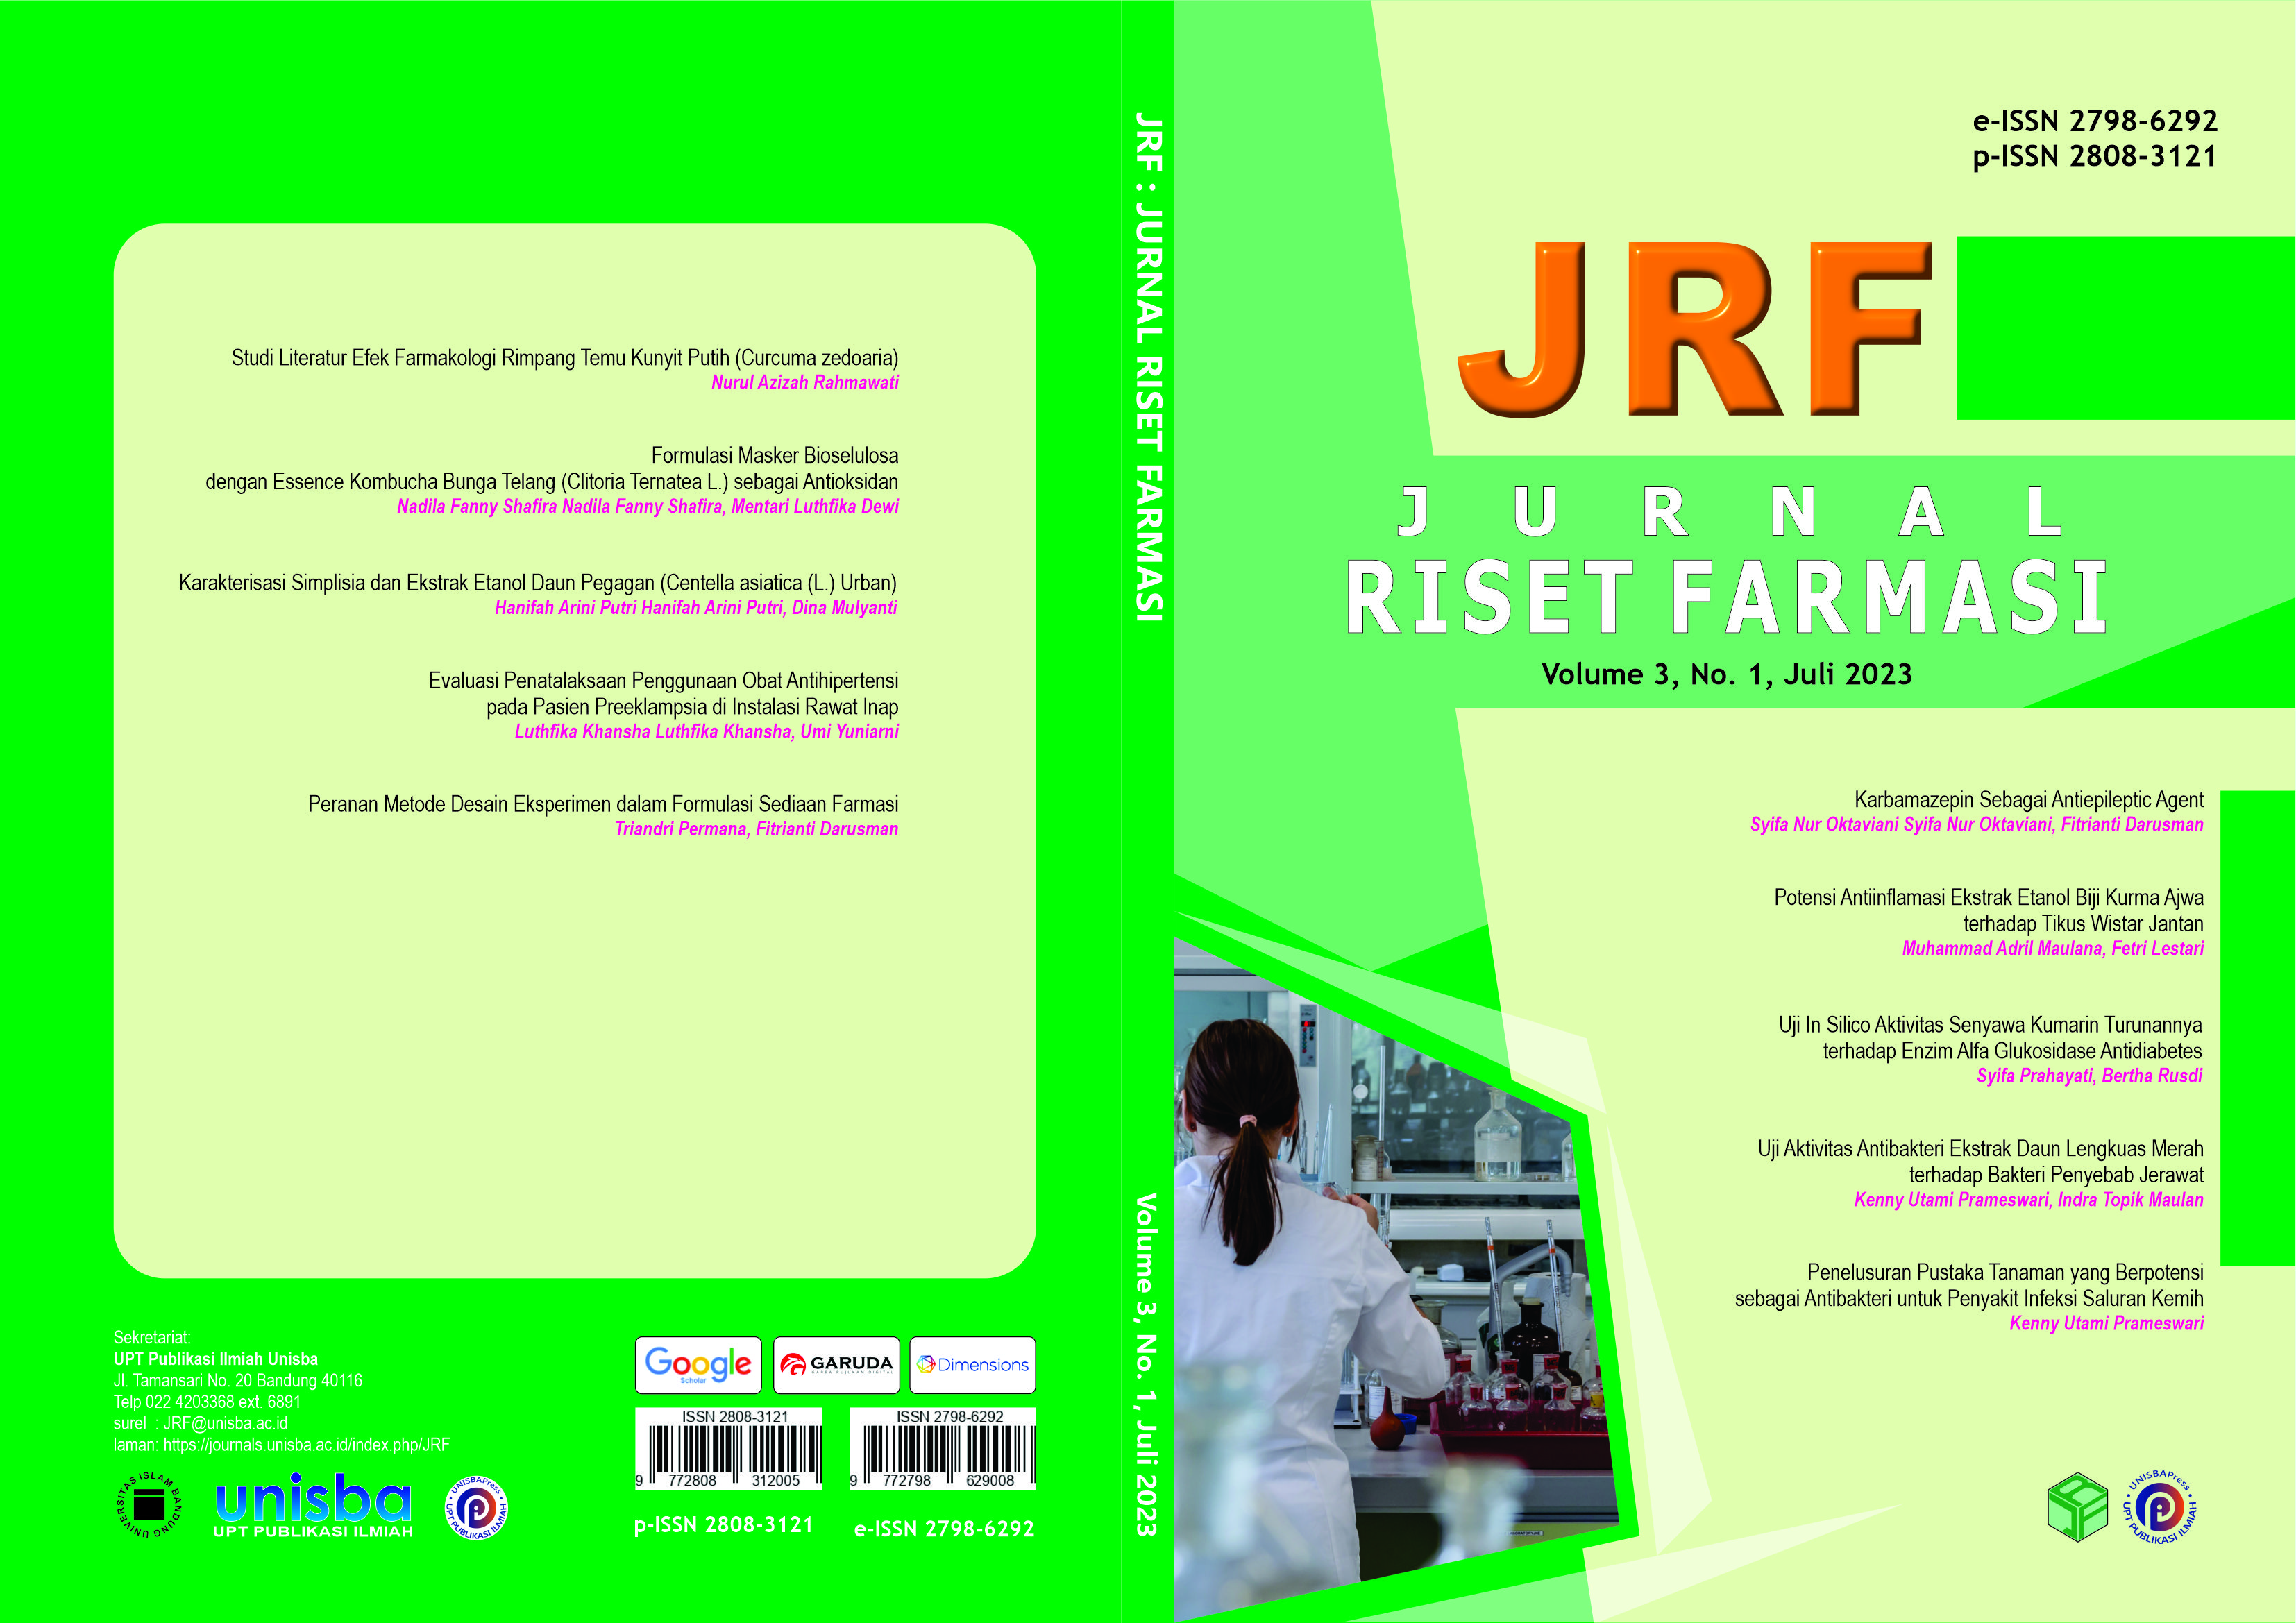 					View Volume 3, No. 1, Juli 2023, Jurnal Riset Farmasi (JRF)
				